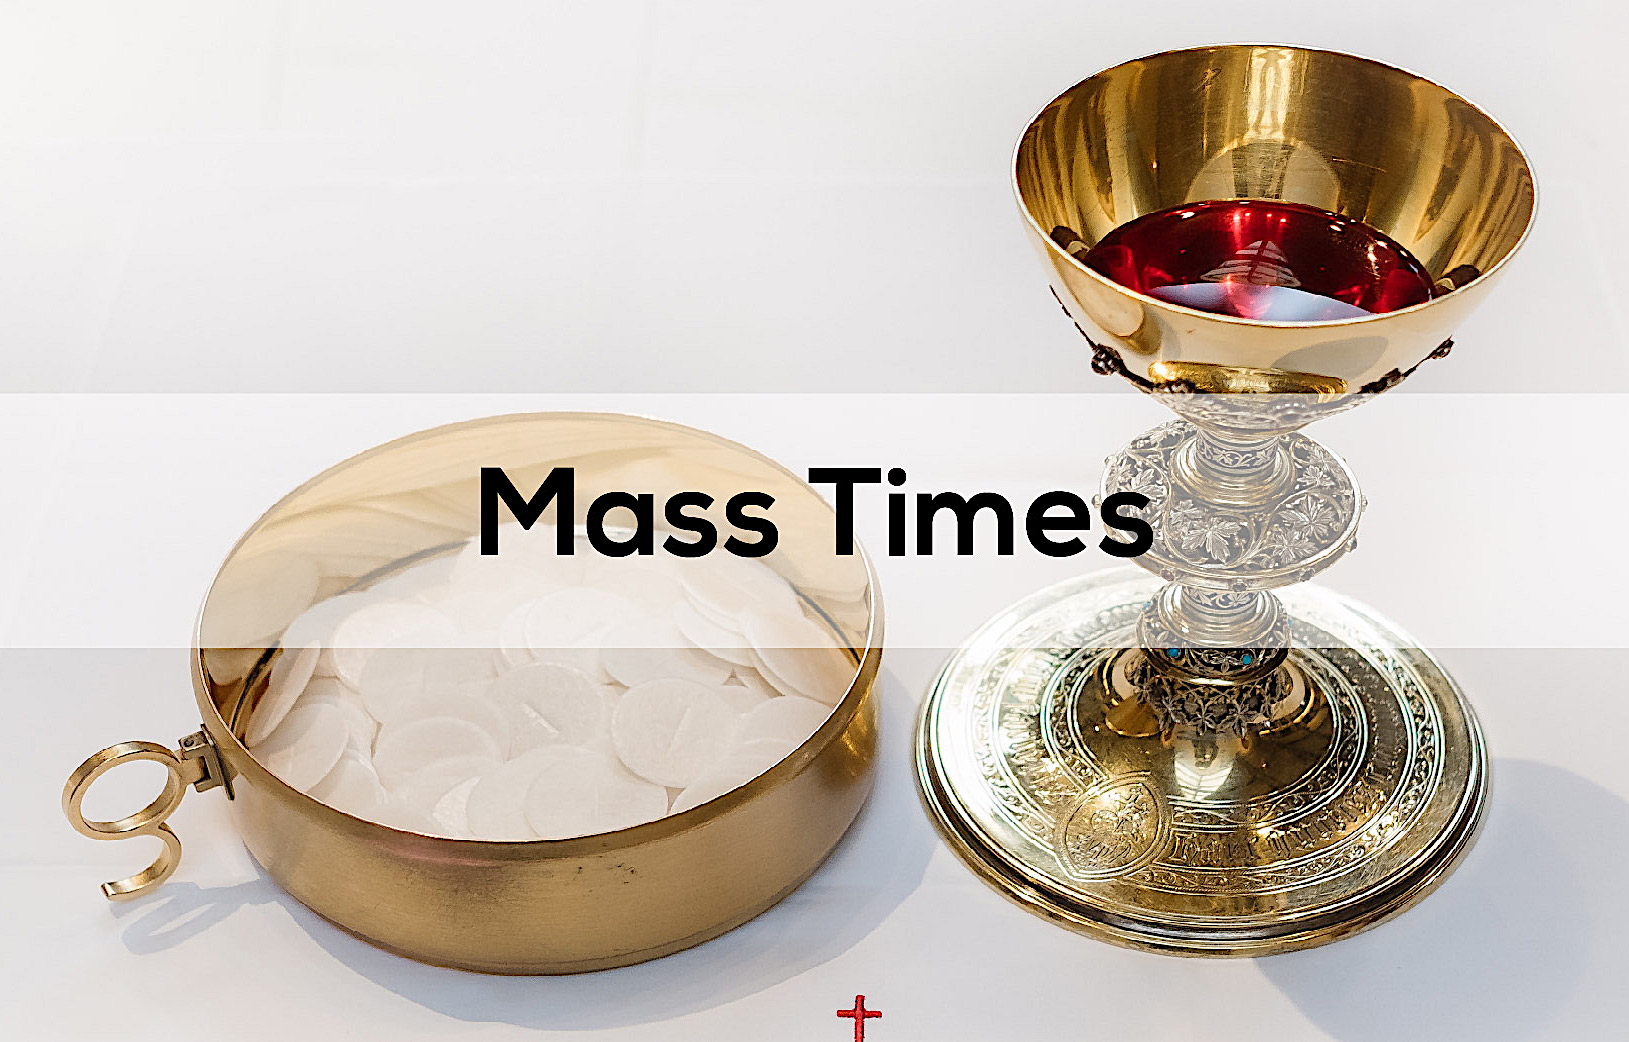 Mass-times